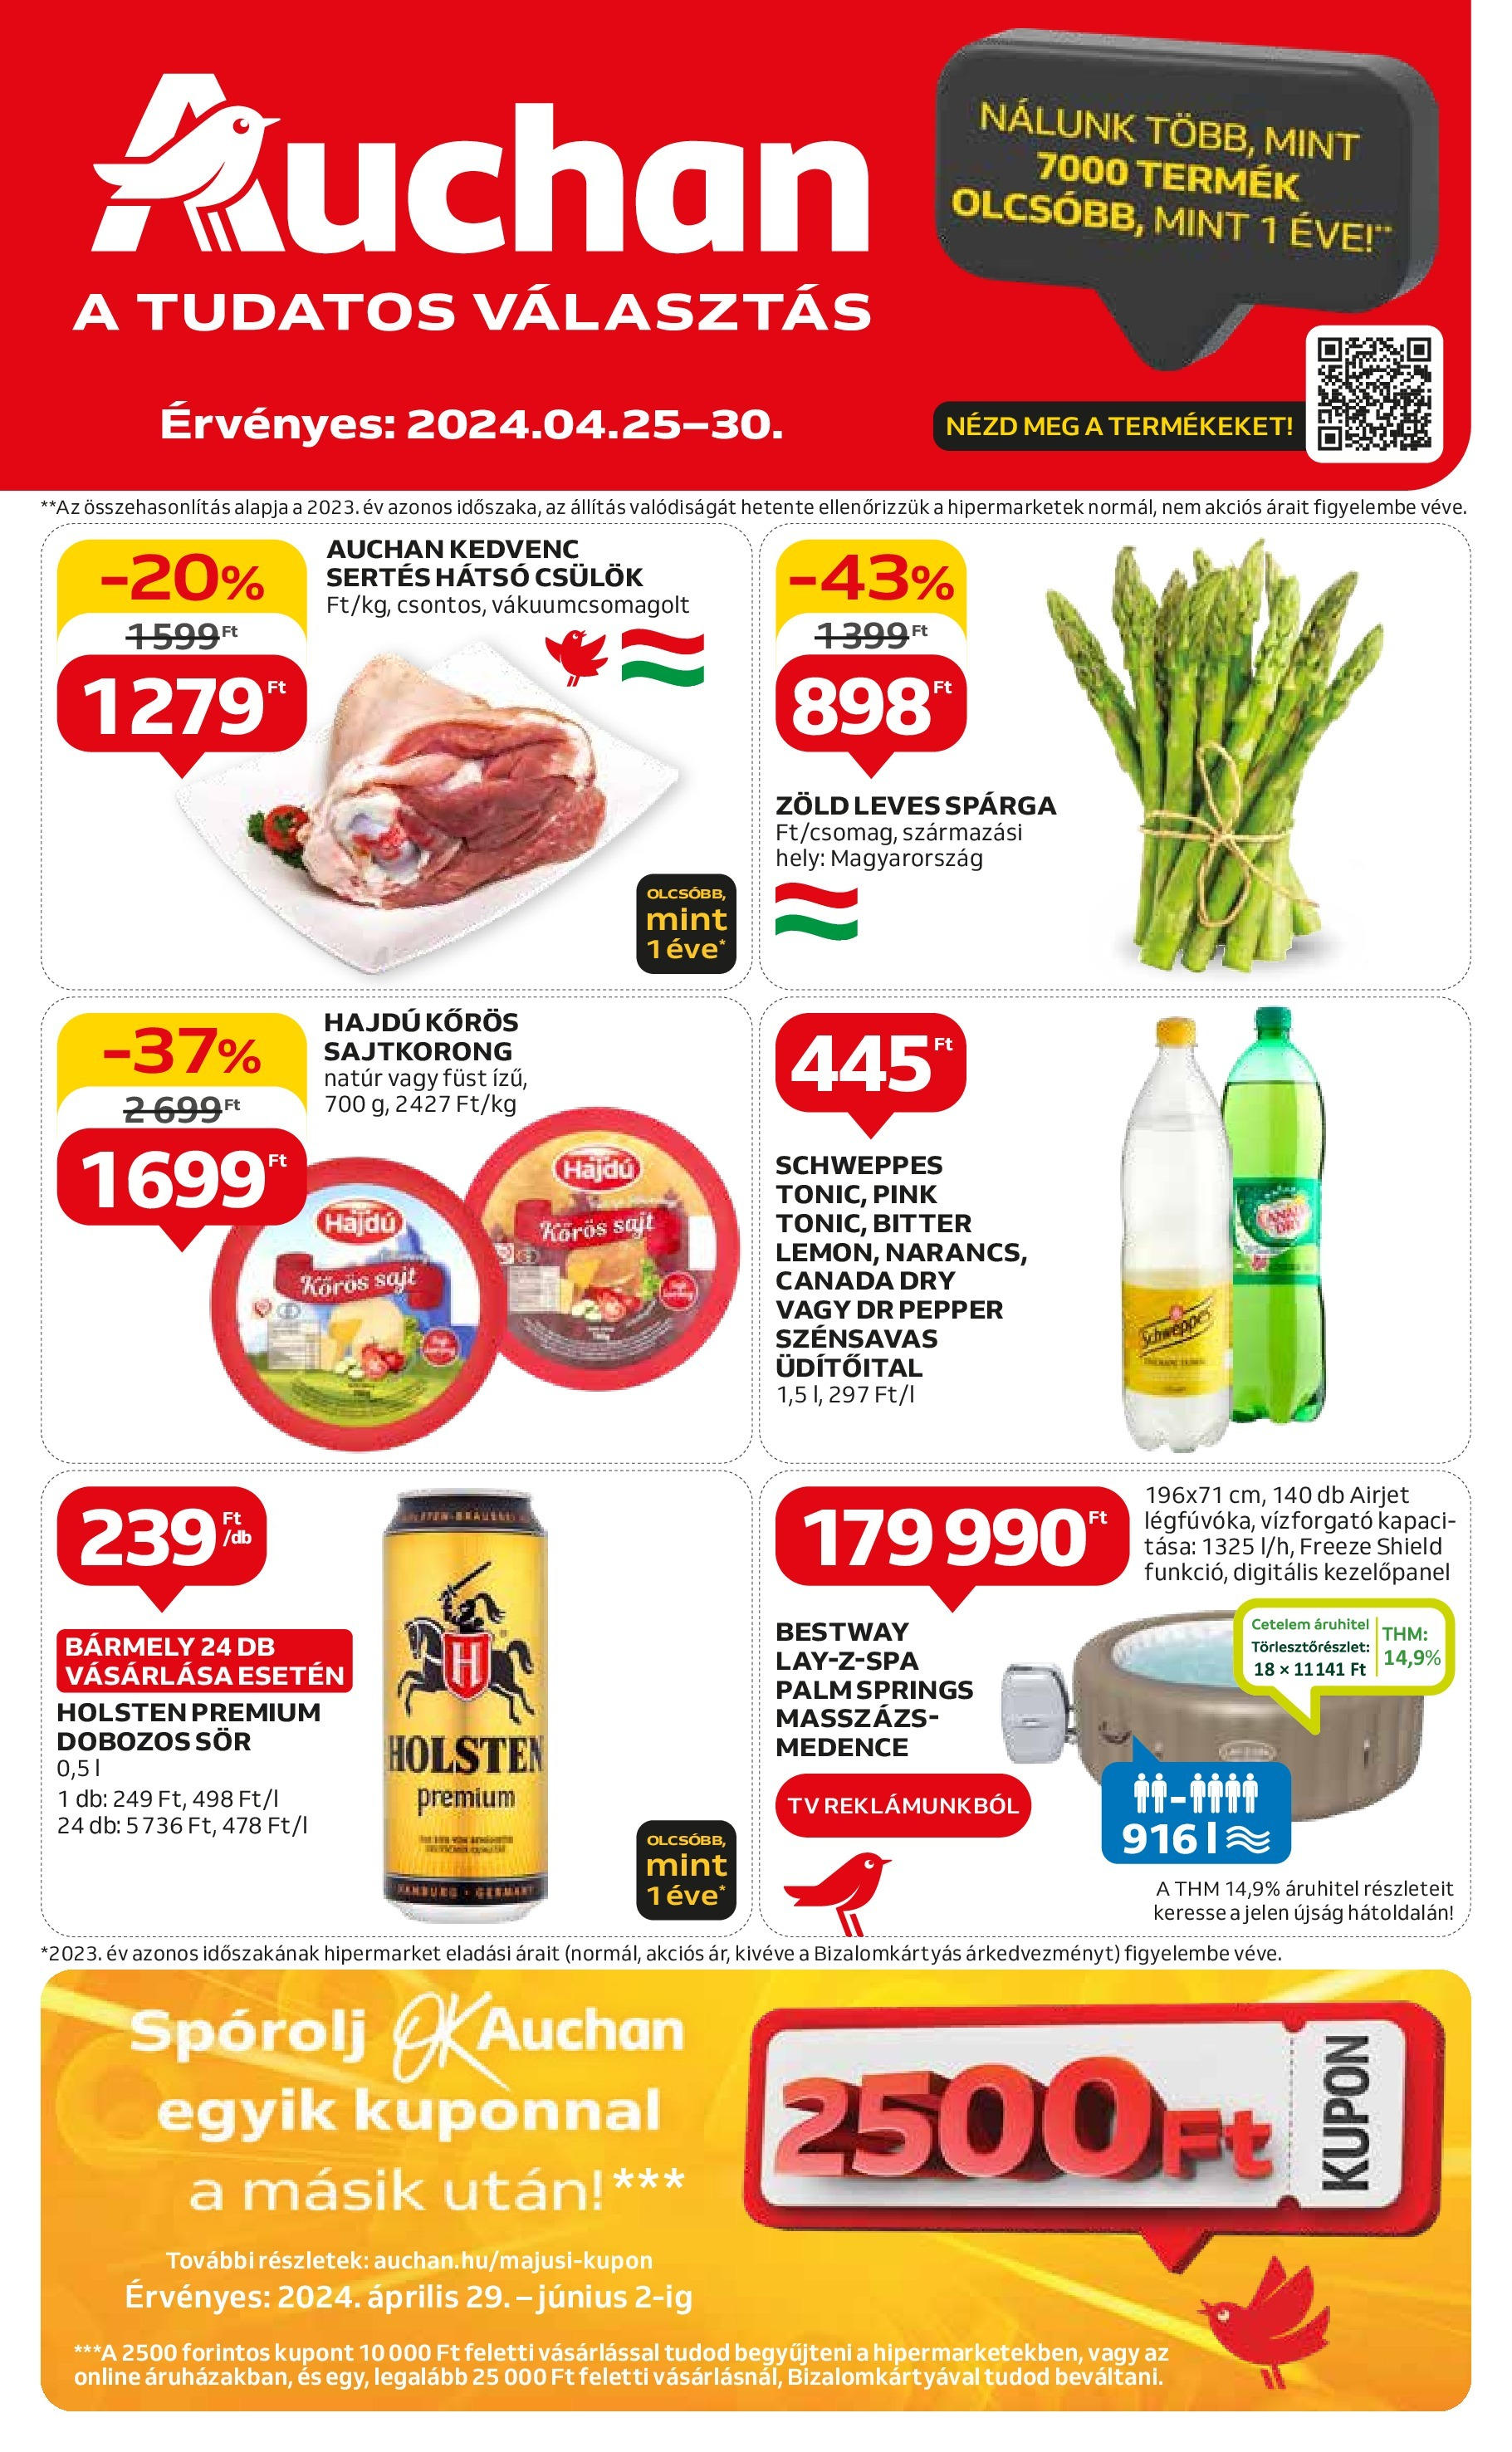 Auchan  Akciós újság - 2024.04.25. -tól/töl > akció, szórólap 🛍️ | Oldal: 1 | Termékek: TV, Medence, Sajt, Dobozos sör